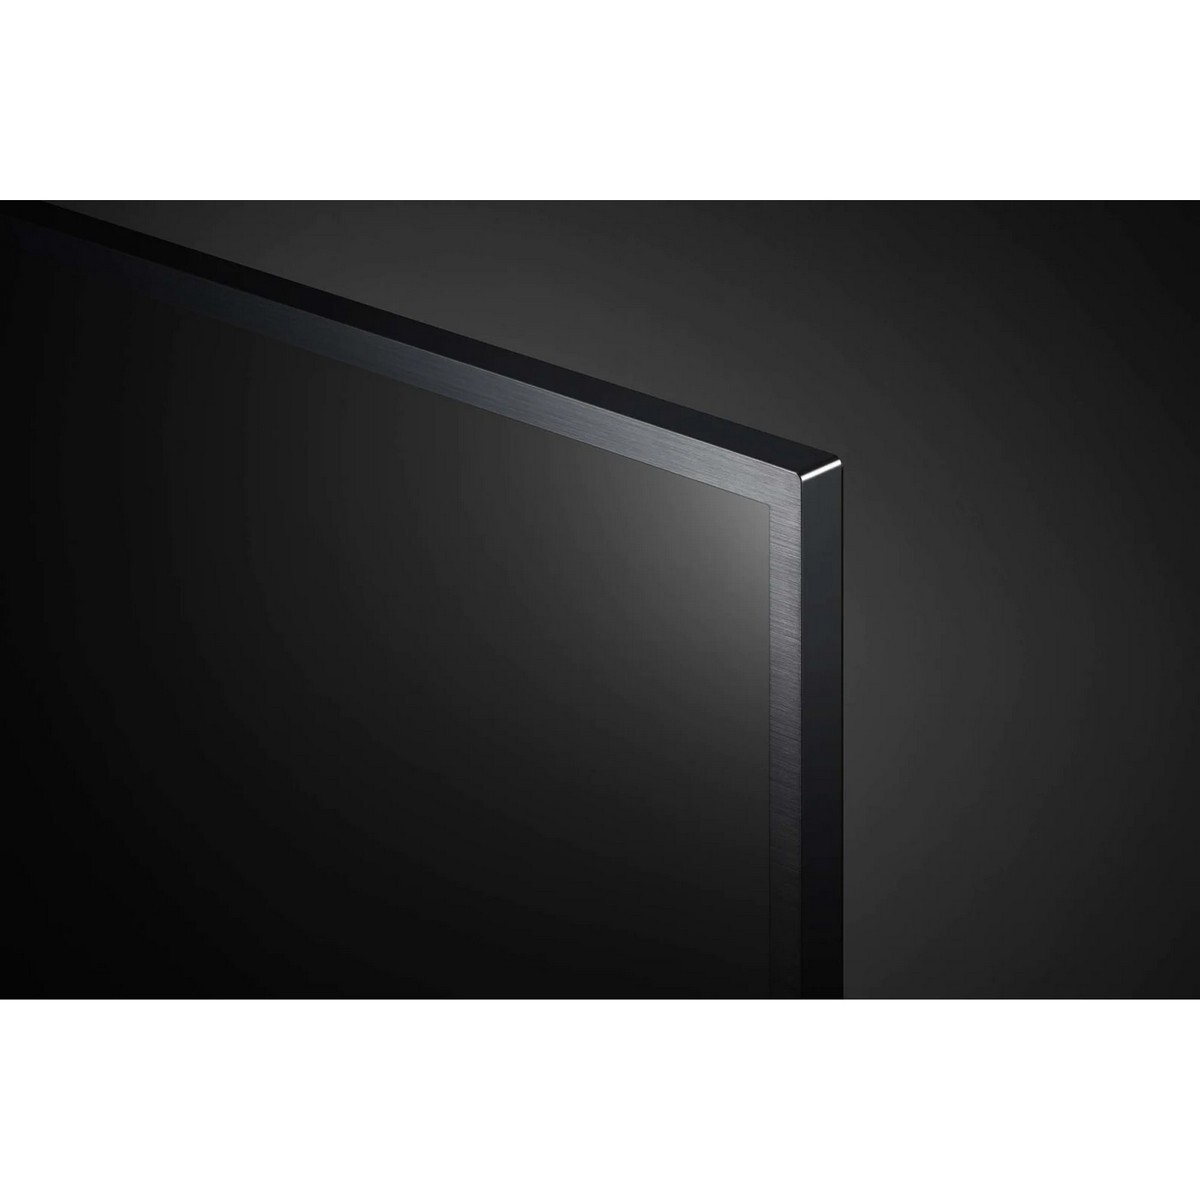 LG 4K Ultra HD Smart LED TV 55UQ7550PSF 55''